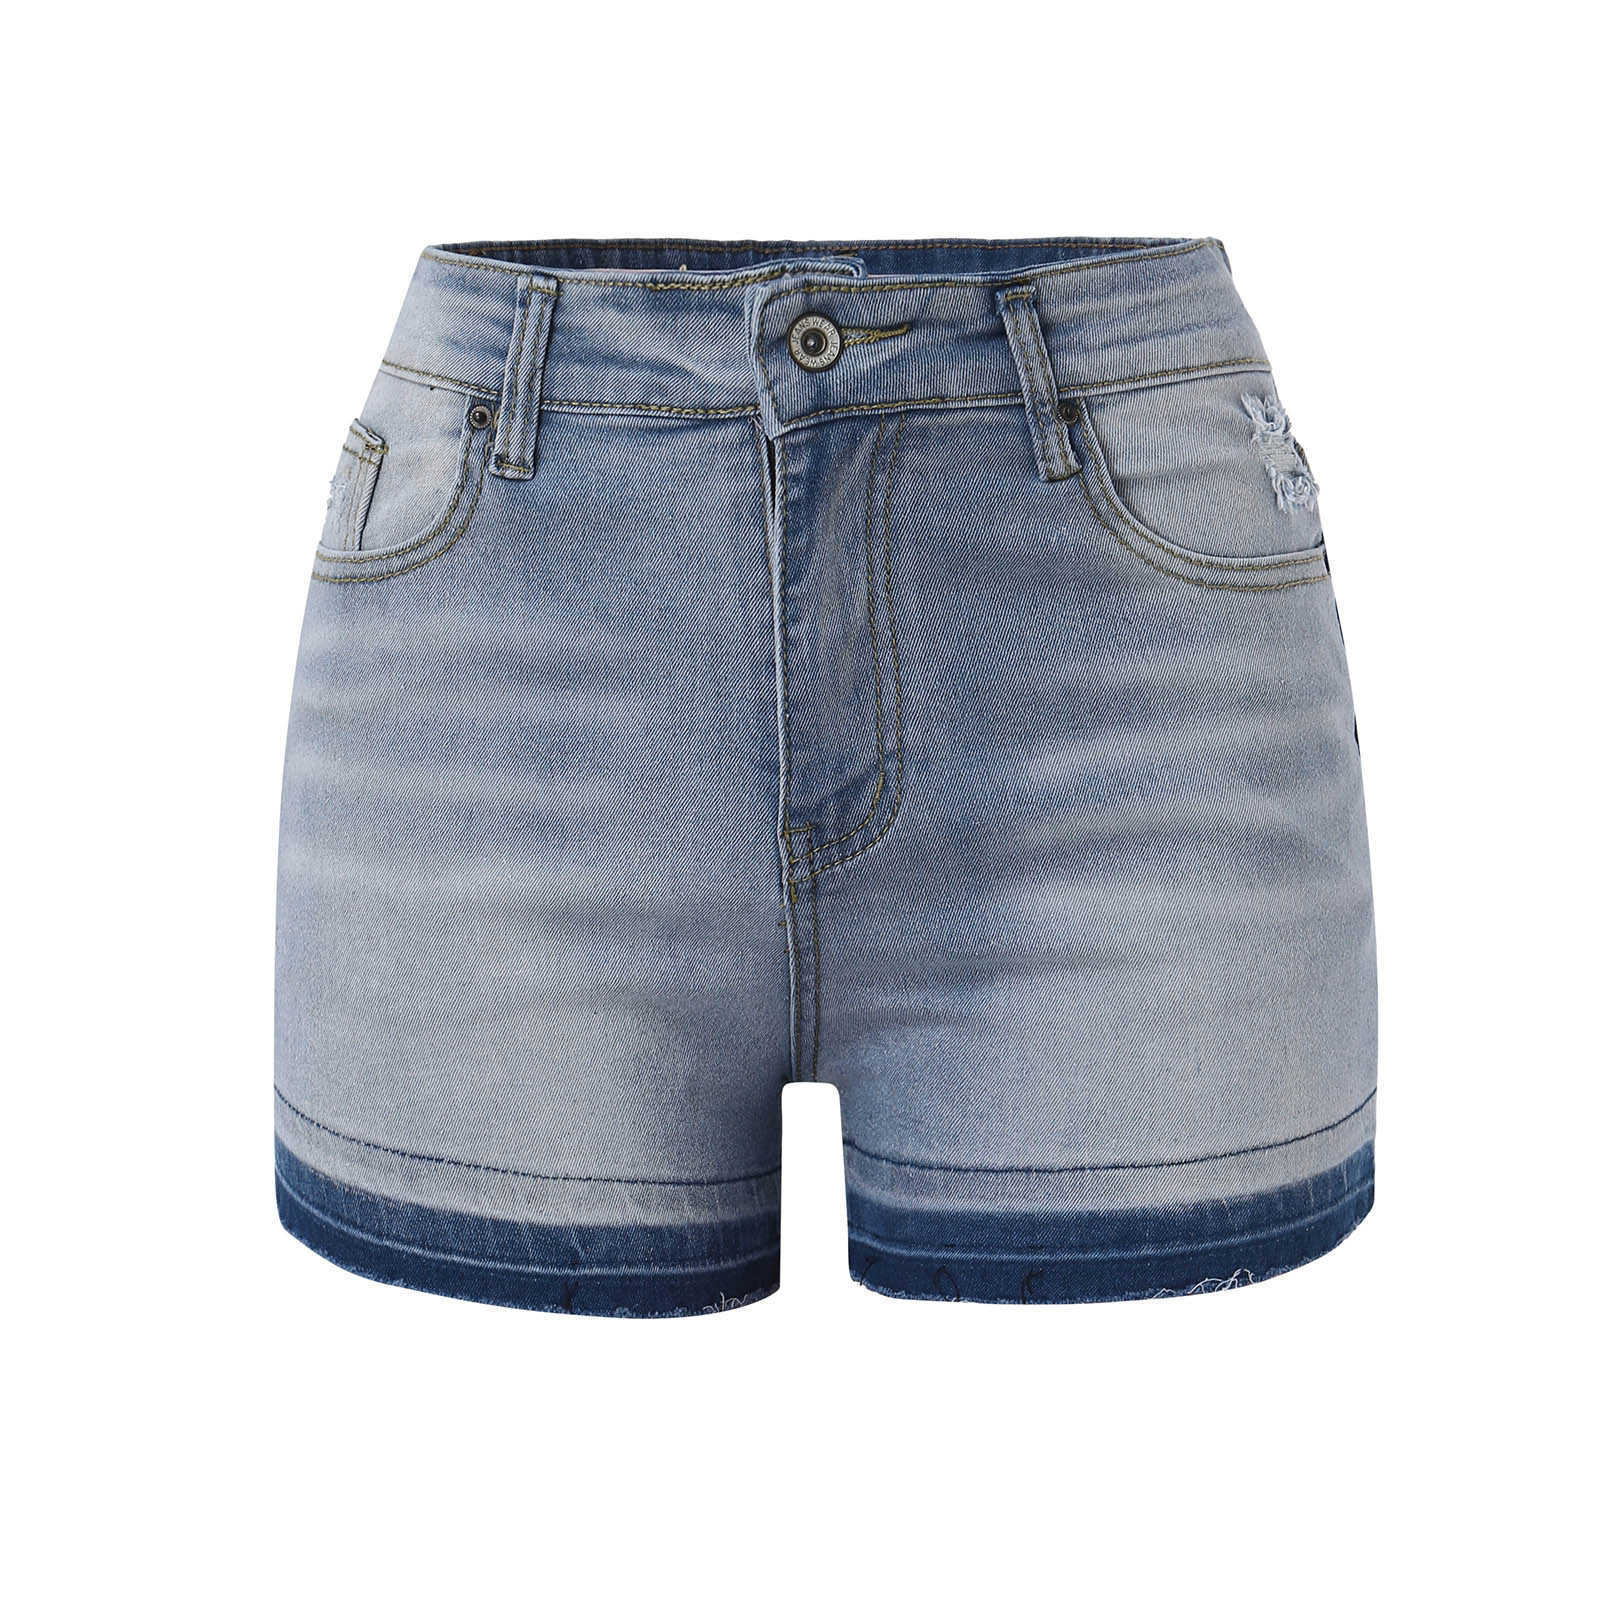 Шорты плюс размер летние женские женские модные одежда для модной одежды работа одежда для джинсовой шорты широкие джинсы женские джинсы P230530